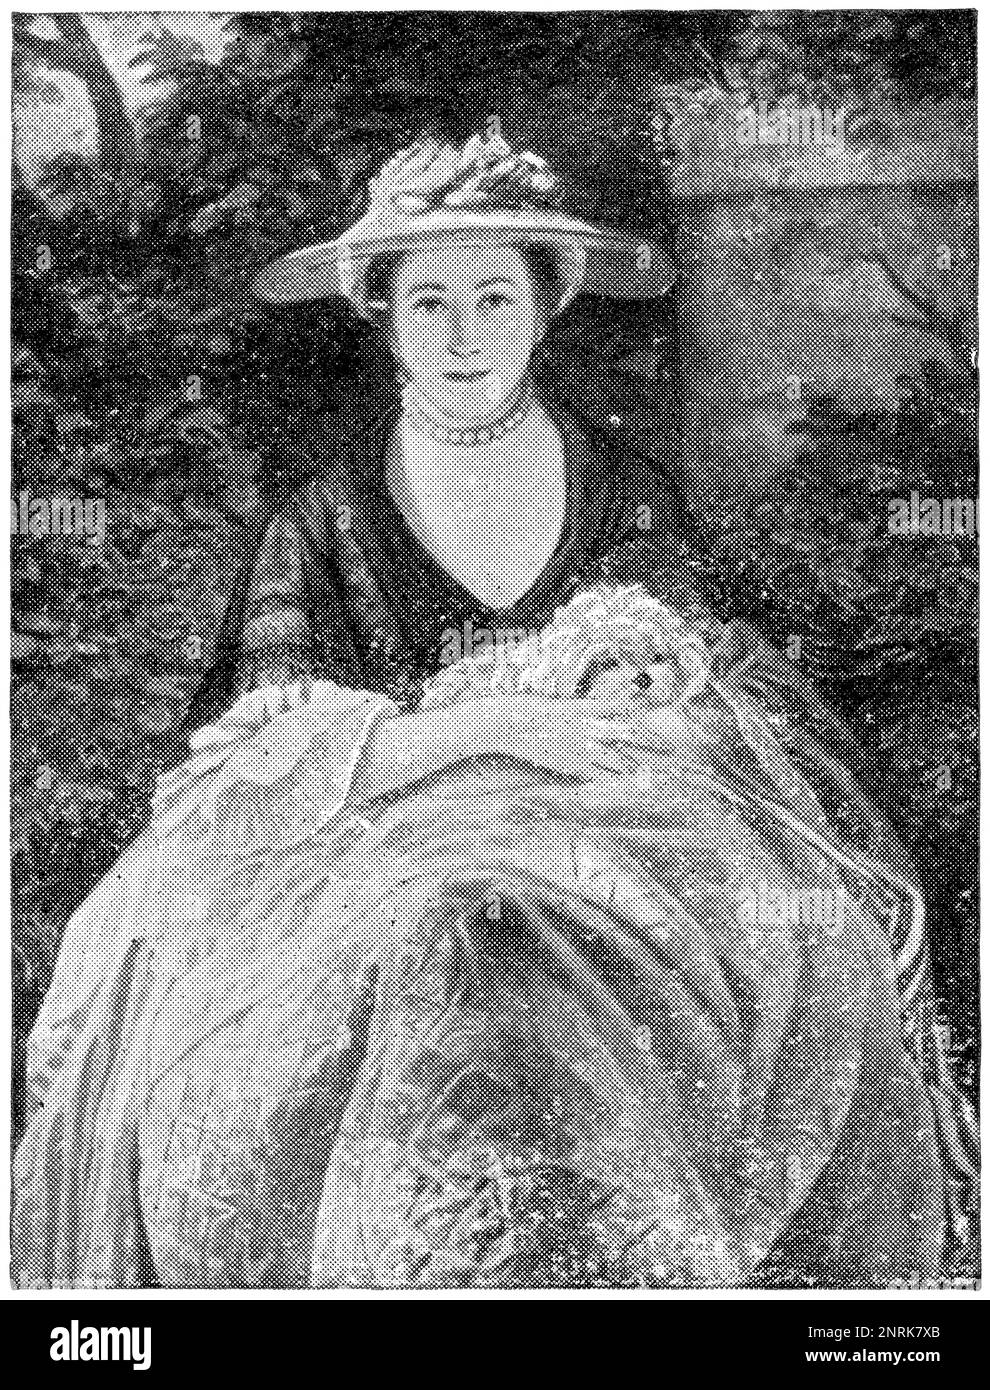 Porträt von Miss Nelly O'Brien von einem englischen Maler Sir Joshua Reynolds. Veröffentlichung des Buches "Meyers Konversations-Lexikon", Band 2, Leipzig, 1910 Stockfoto